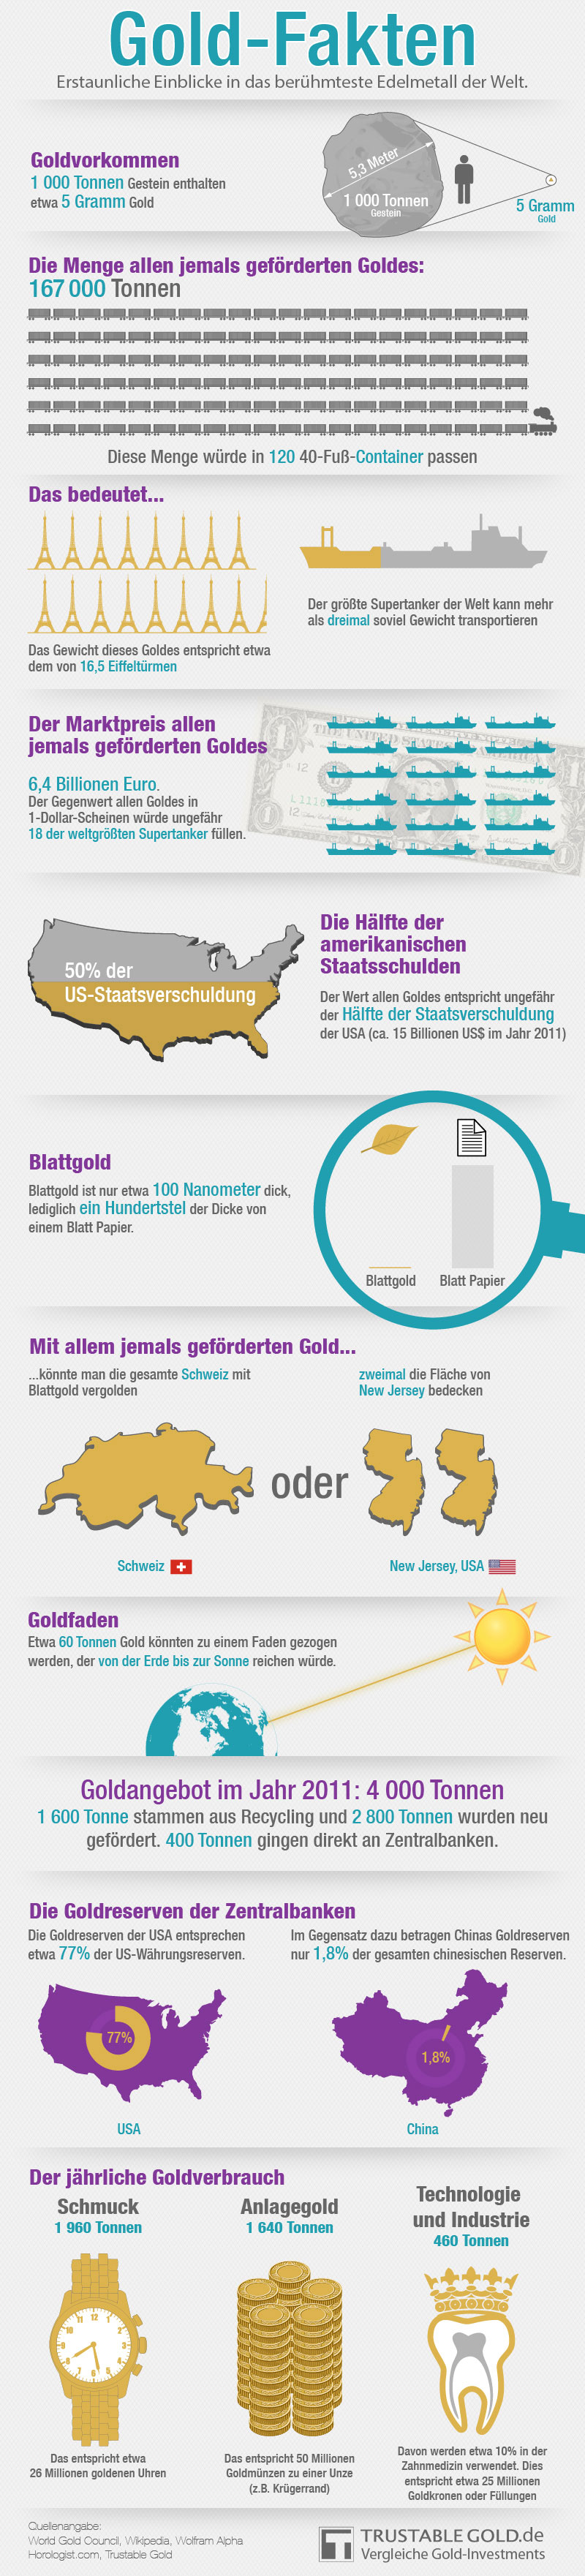 Infografik Gold Fakten